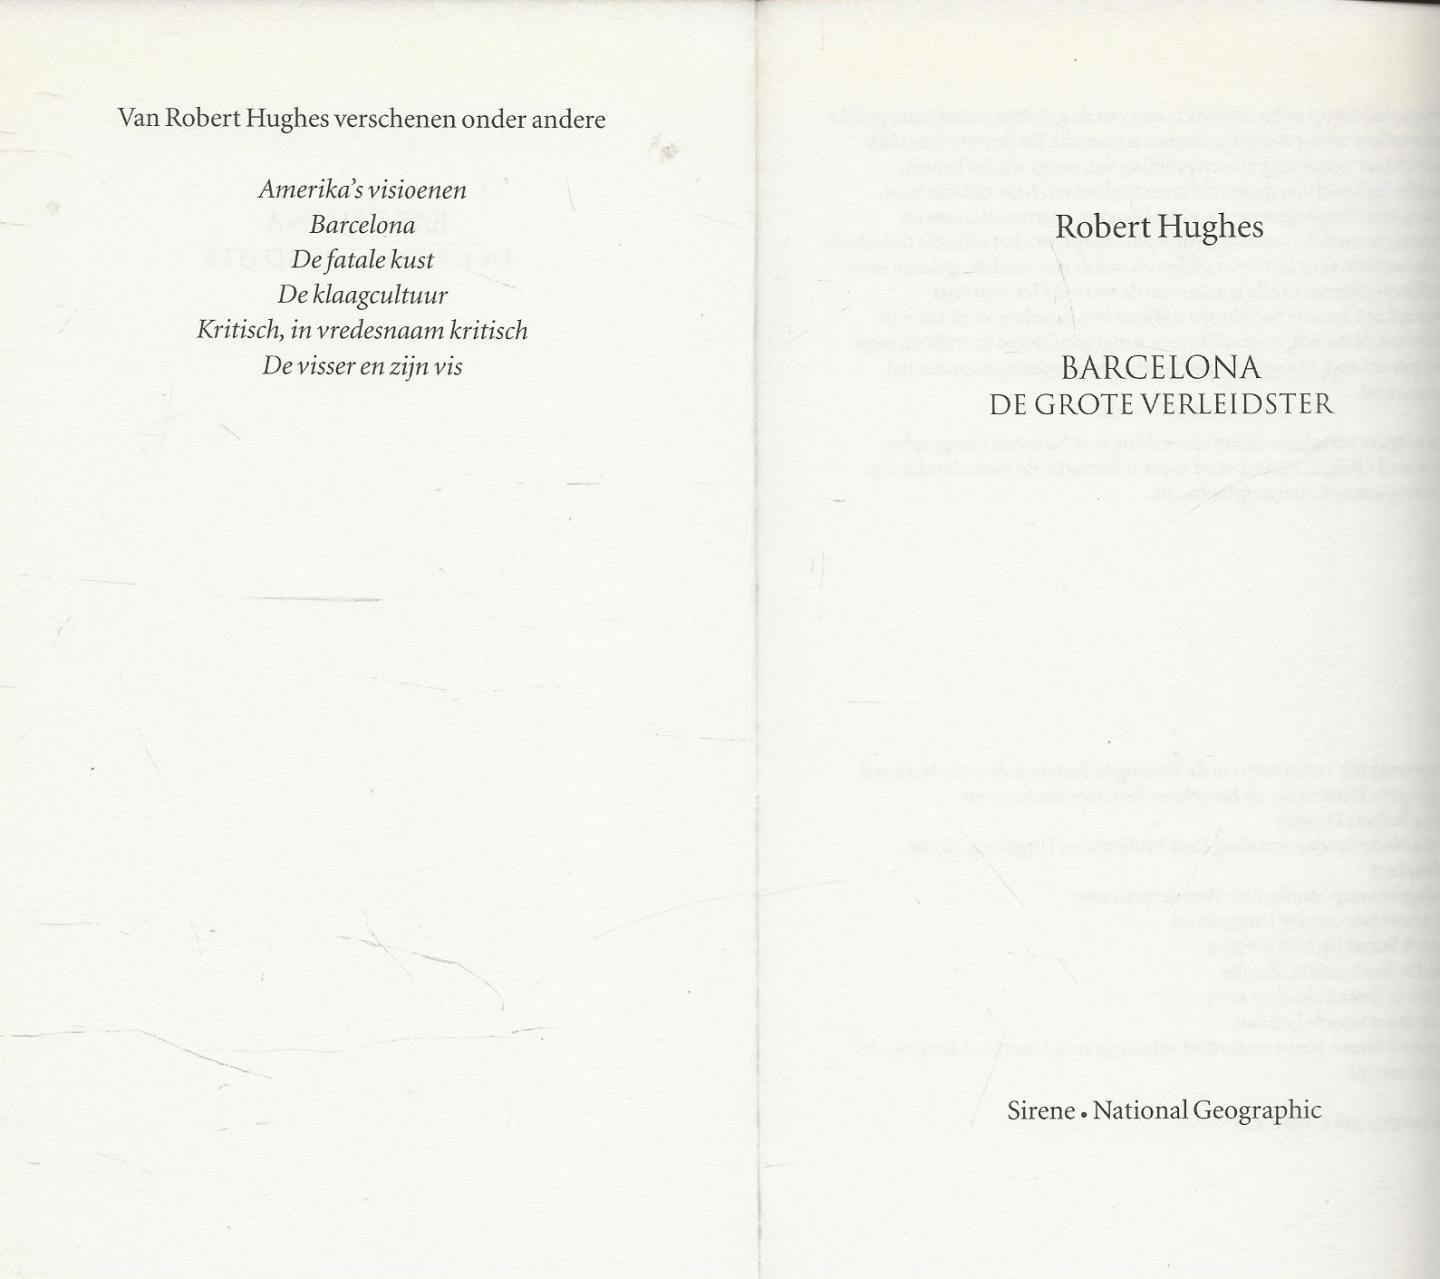 Robert Hughes - Barcelona - de grote verleidster